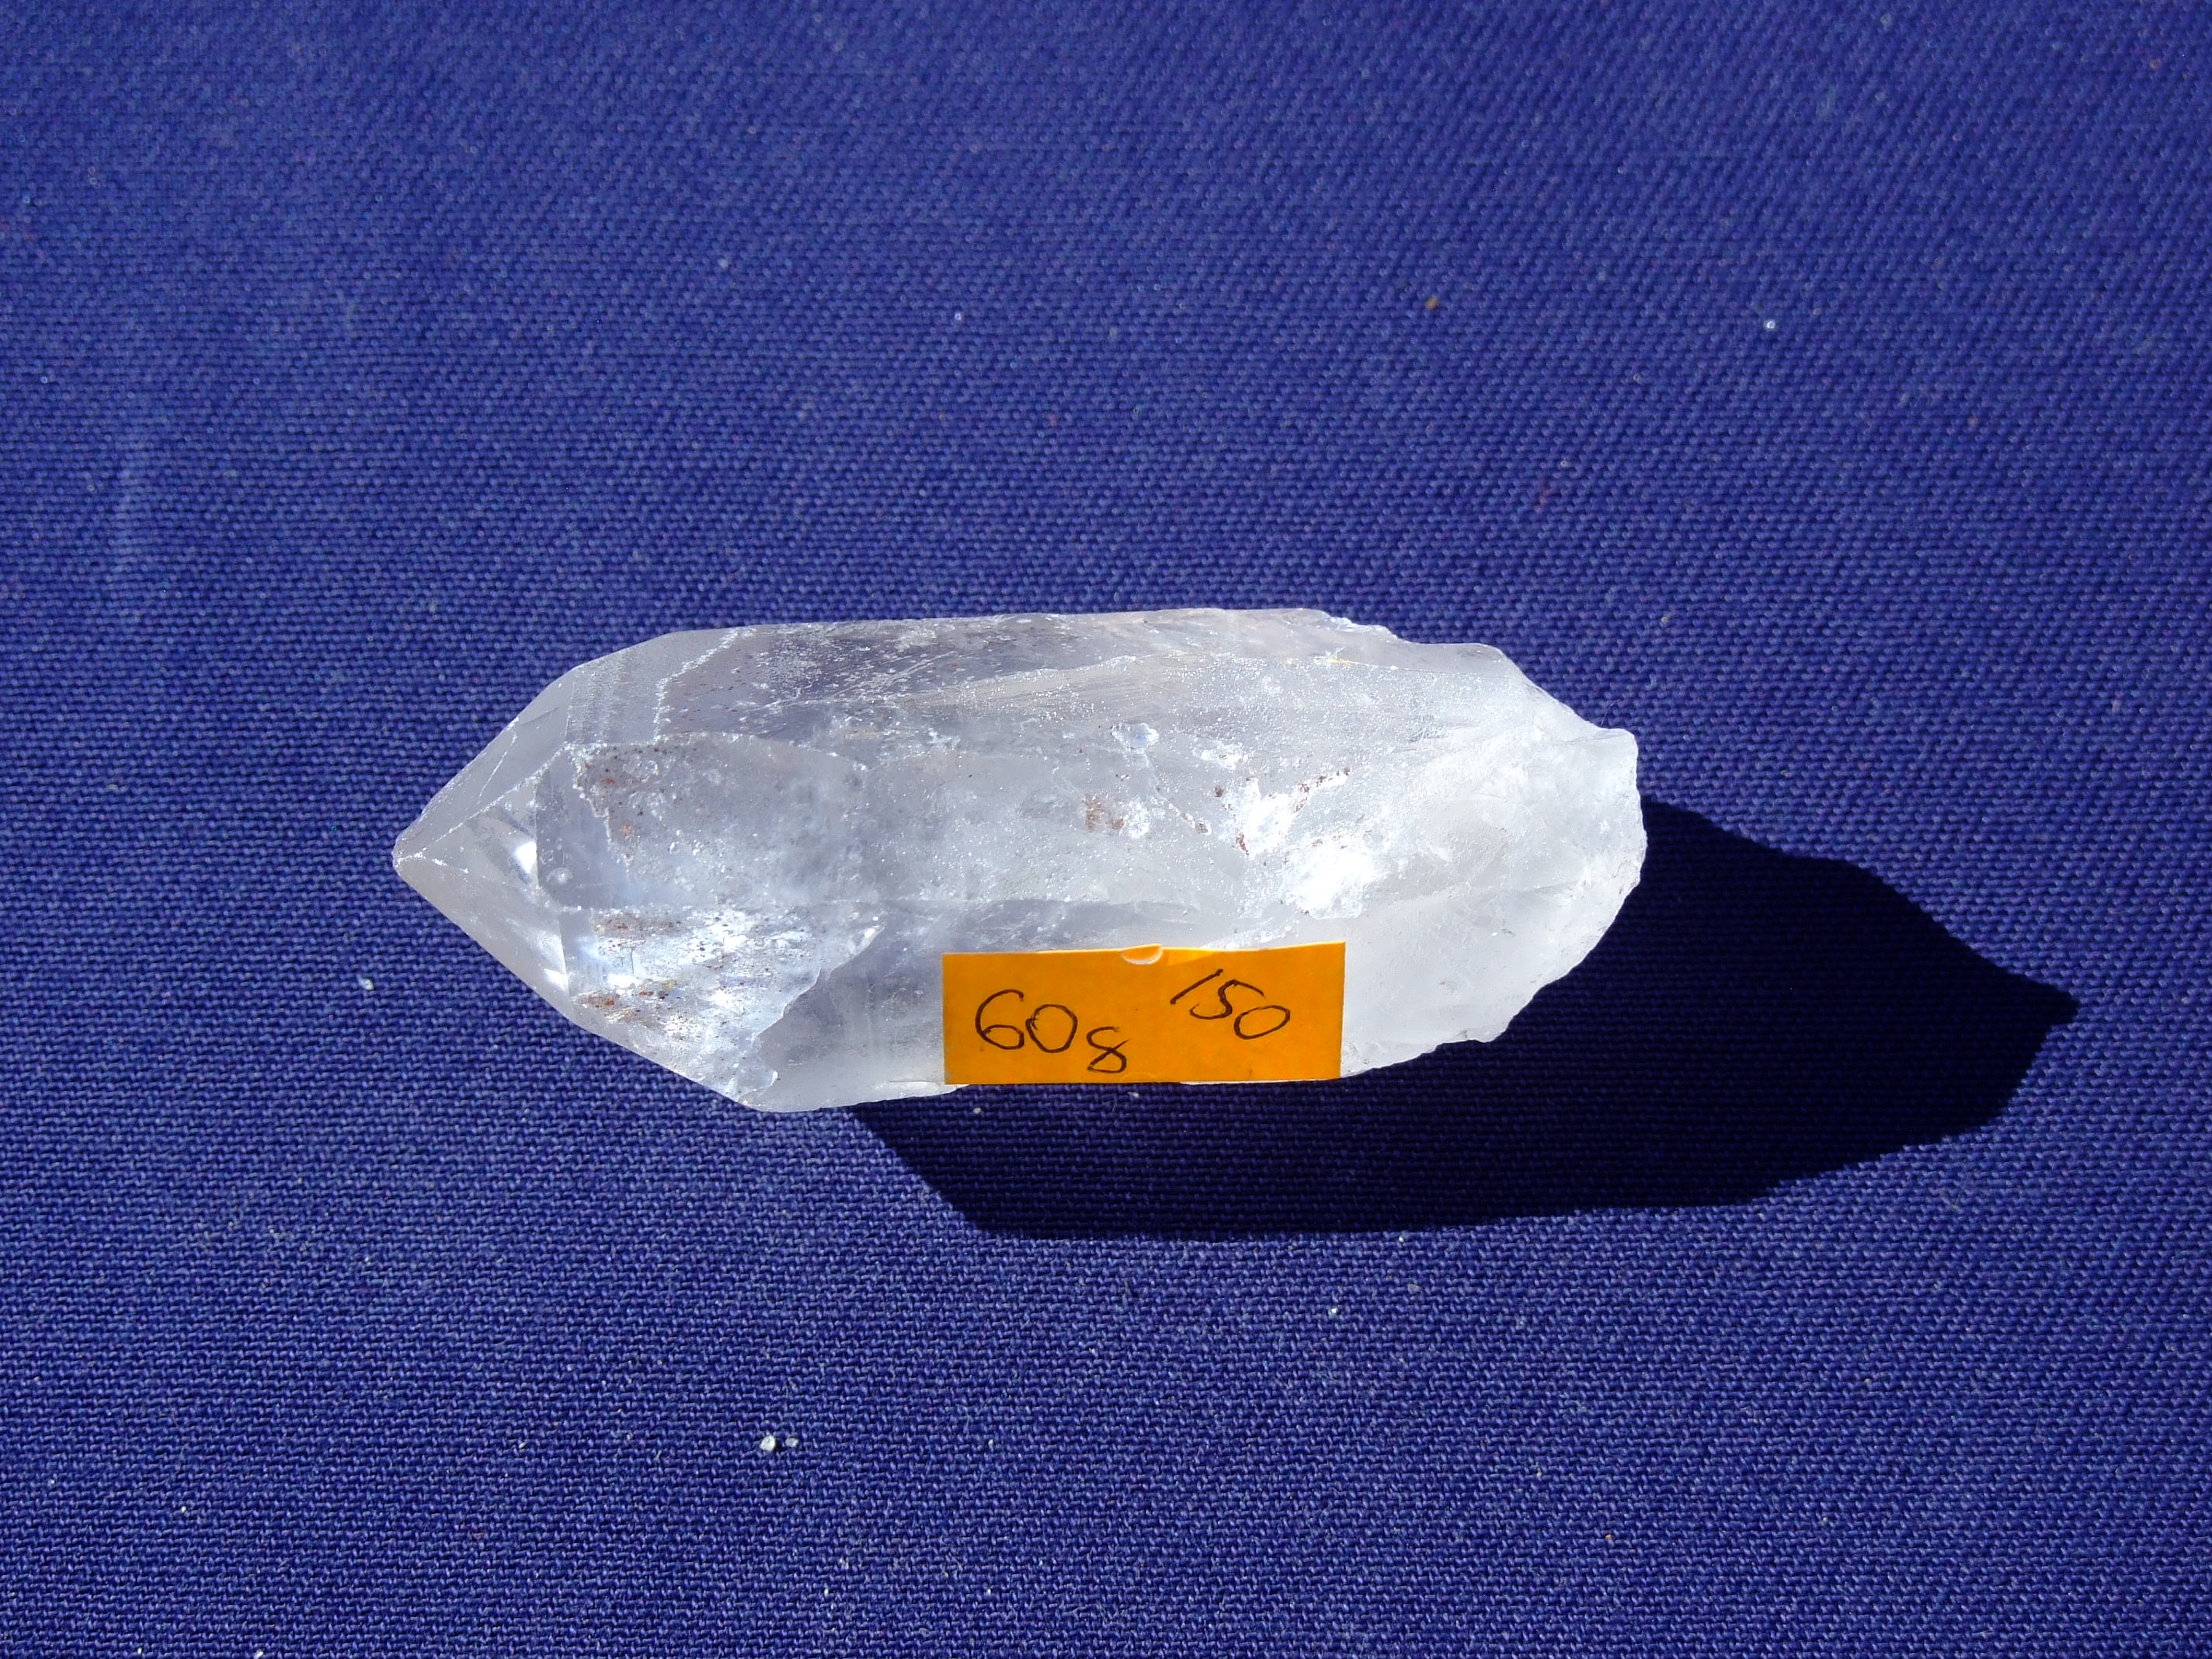 Krystal křišťálu 60g